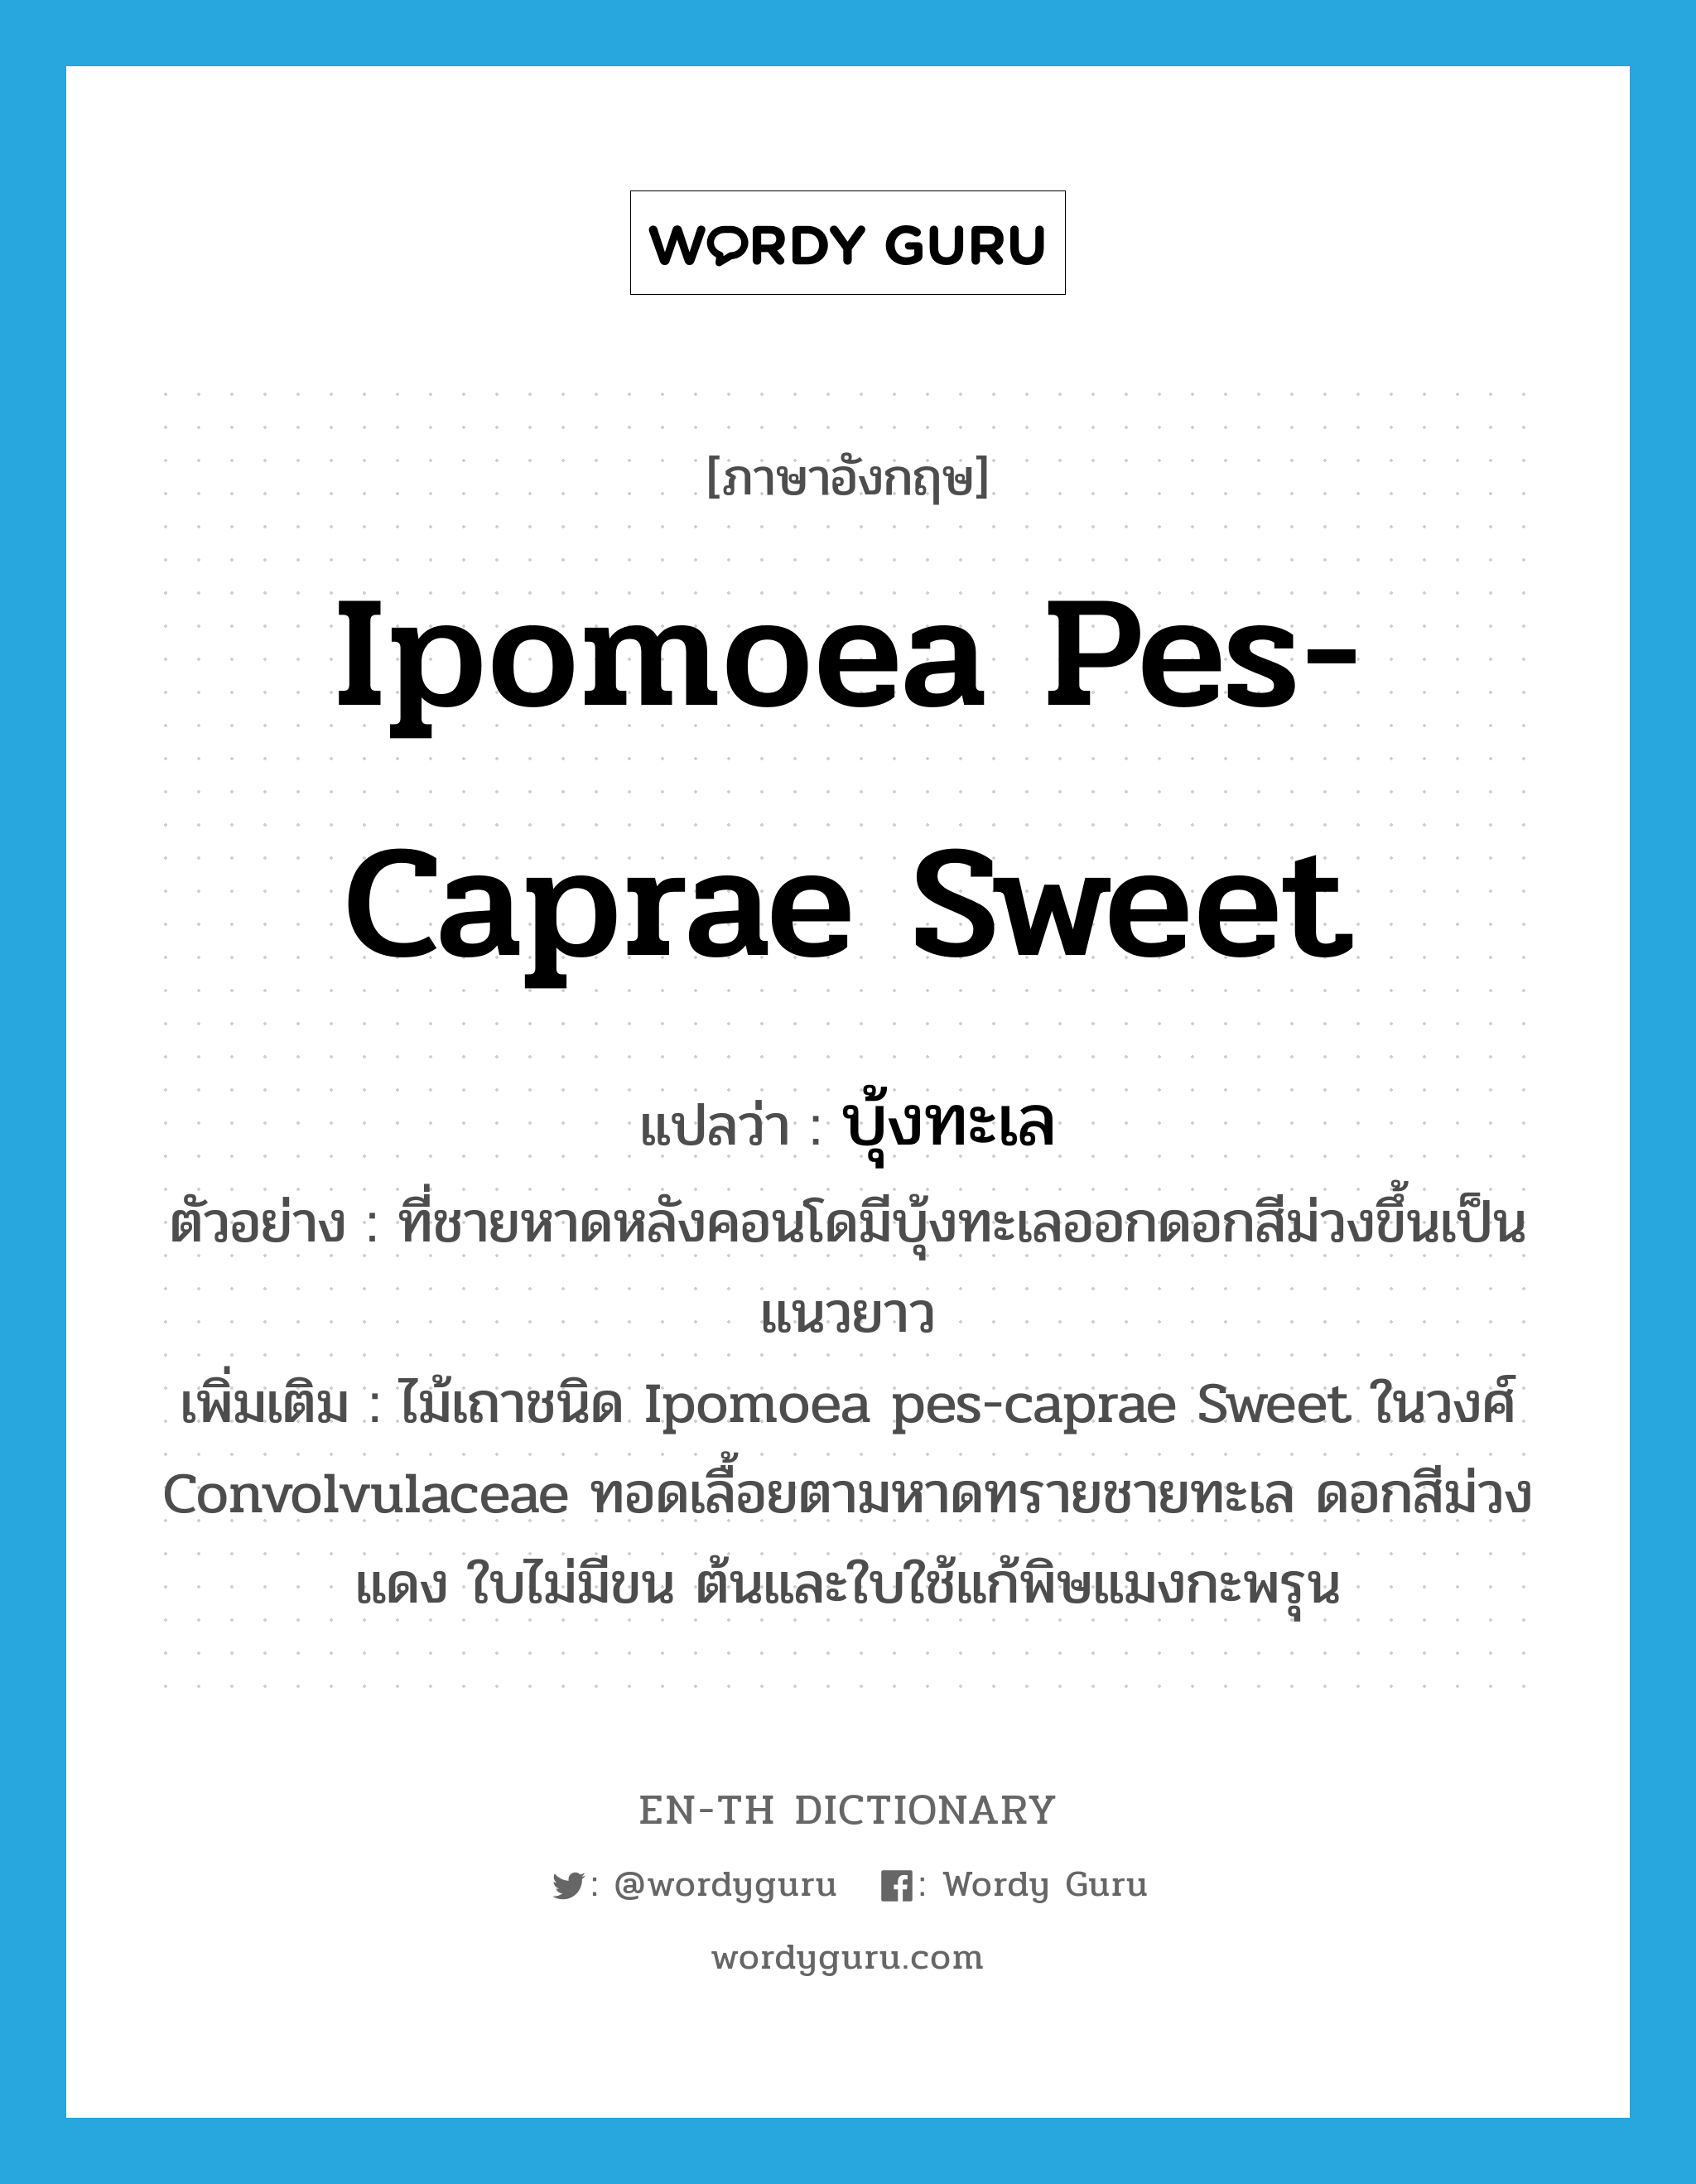 Ipomoea pes-caprae Sweet แปลว่า?, คำศัพท์ภาษาอังกฤษ Ipomoea pes-caprae Sweet แปลว่า บุ้งทะเล ประเภท N ตัวอย่าง ที่ชายหาดหลังคอนโดมีบุ้งทะเลออกดอกสีม่วงขึ้นเป็นแนวยาว เพิ่มเติม ไม้เถาชนิด Ipomoea pes-caprae Sweet ในวงศ์ Convolvulaceae ทอดเลื้อยตามหาดทรายชายทะเล ดอกสีม่วงแดง ใบไม่มีขน ต้นและใบใช้แก้พิษแมงกะพรุน หมวด N